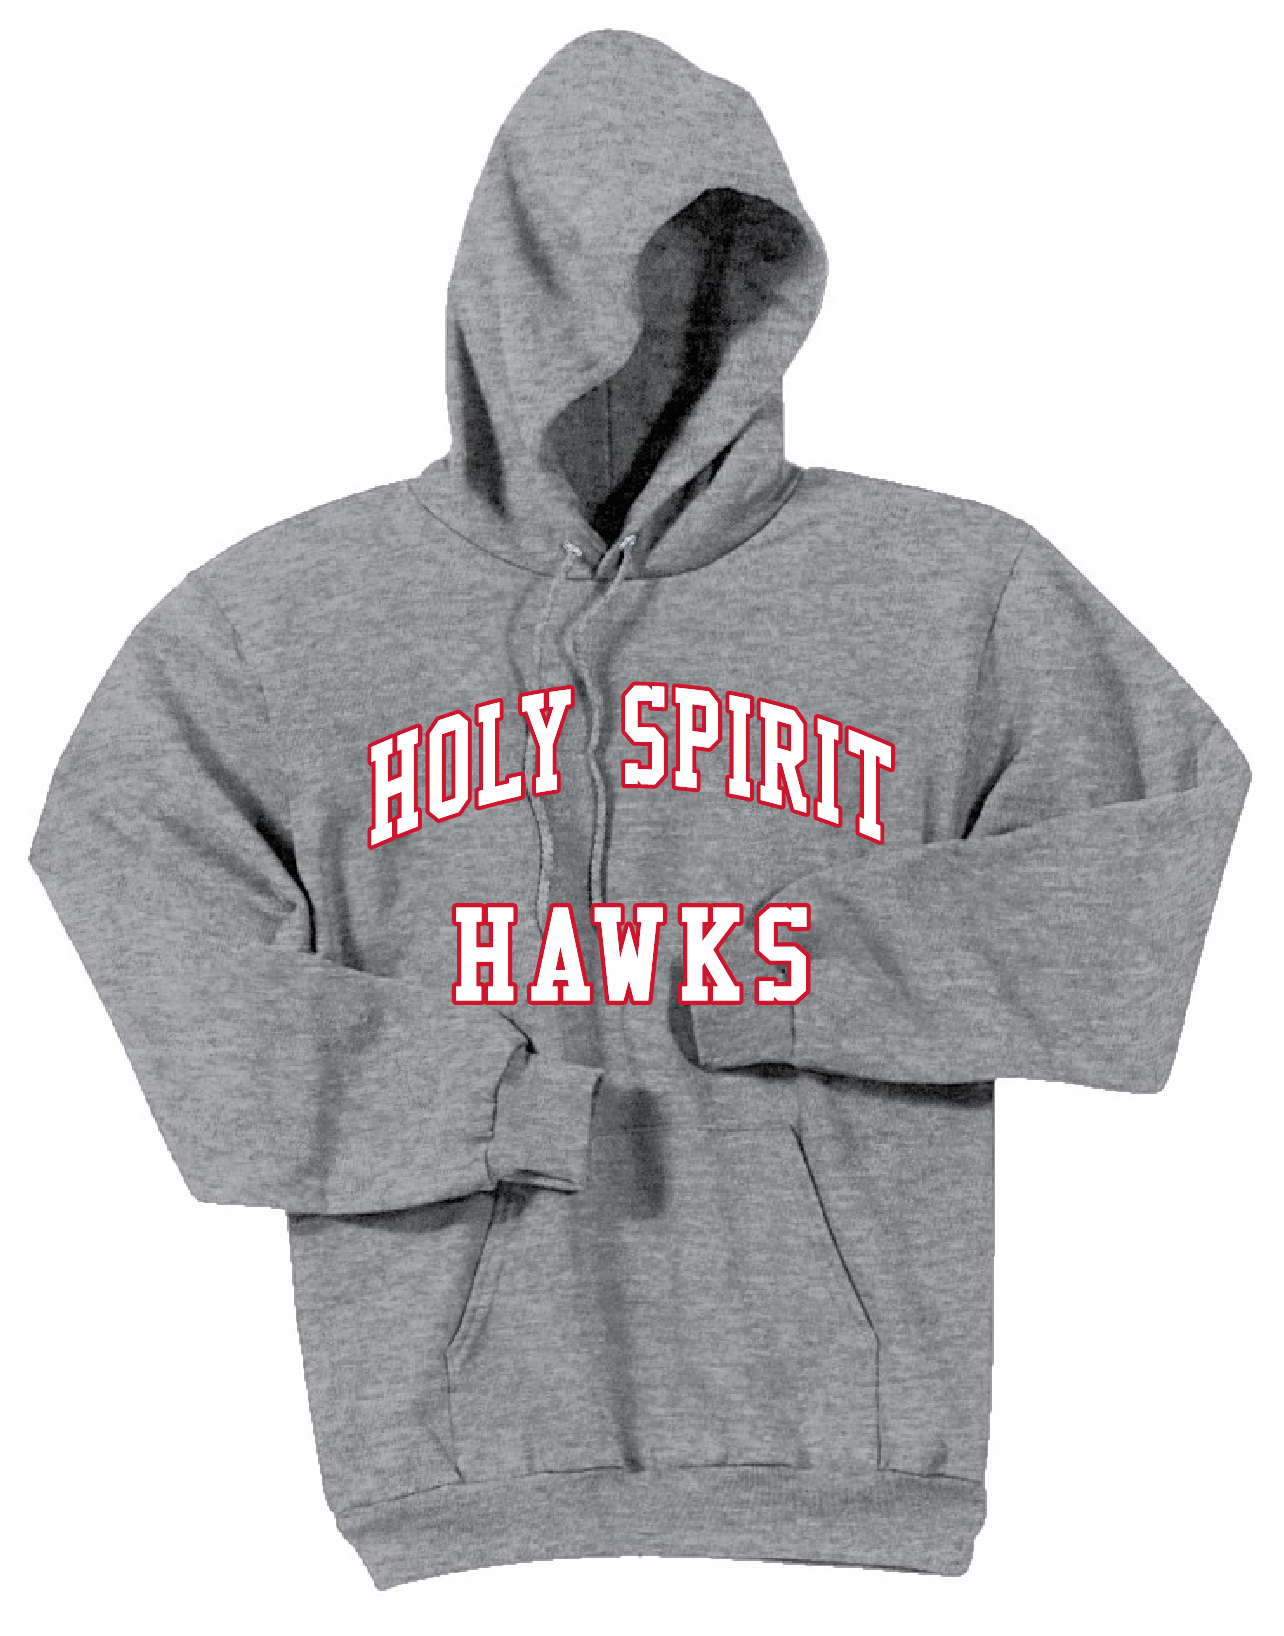 HS Hawks Hoodie